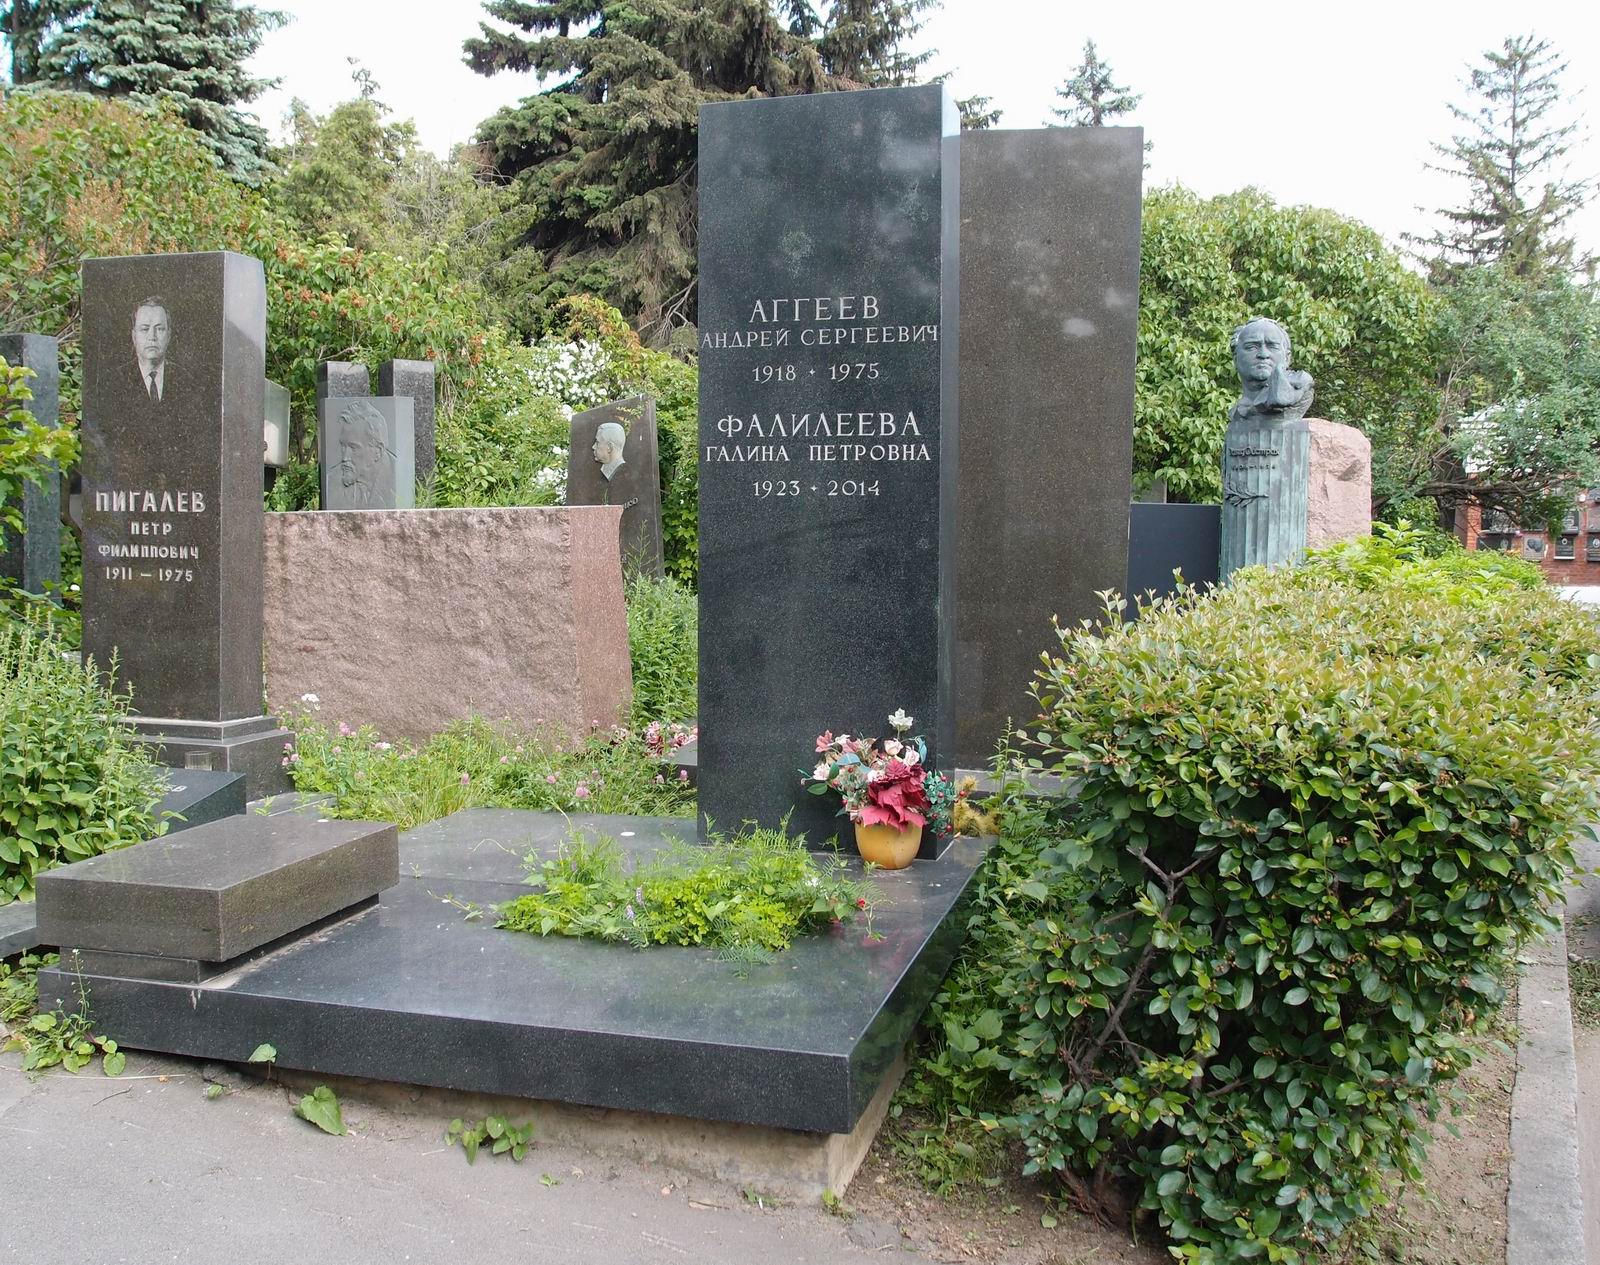 Памятник на могиле Аггеева А.С. (1918-1975), на Новодевичьем кладбище (7-10-23).